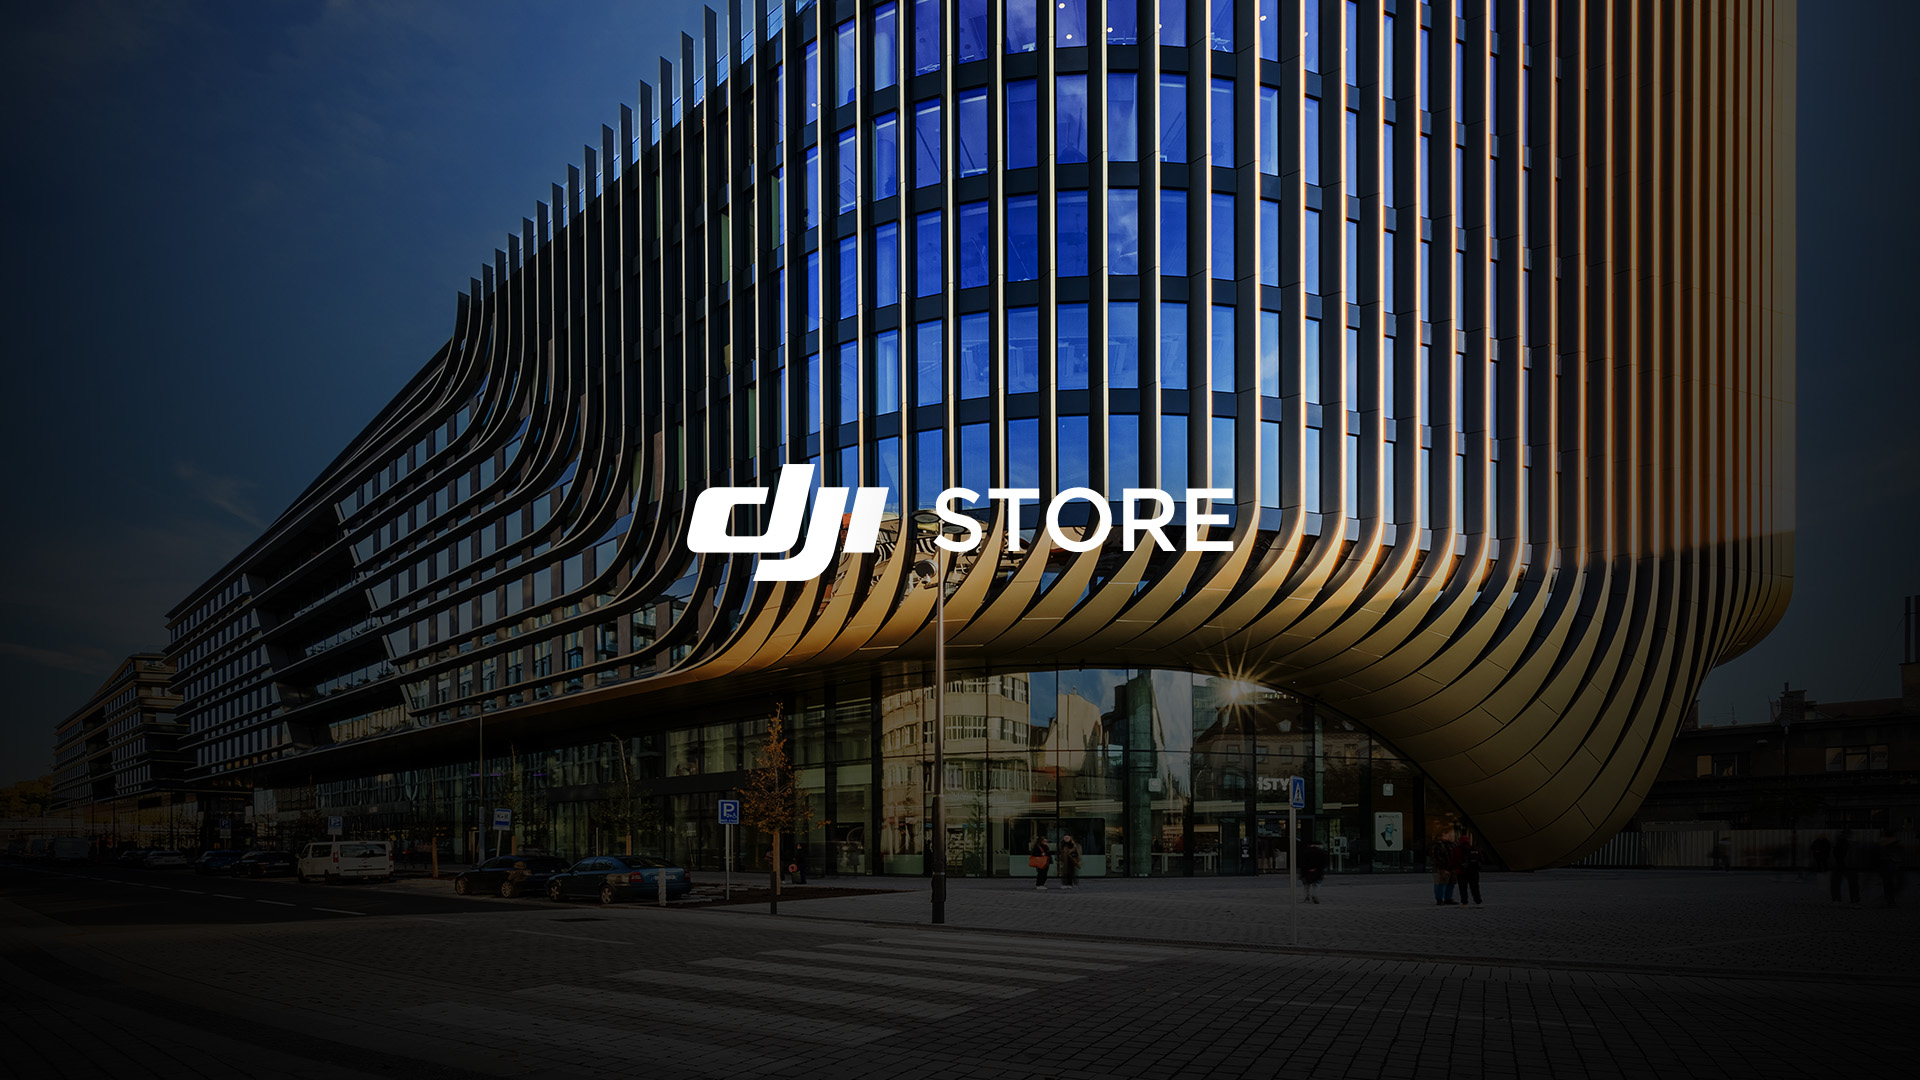 Praha Masaryčka uvítá oficiální DJI Store: Slavnostní otevření s až 50% slevami